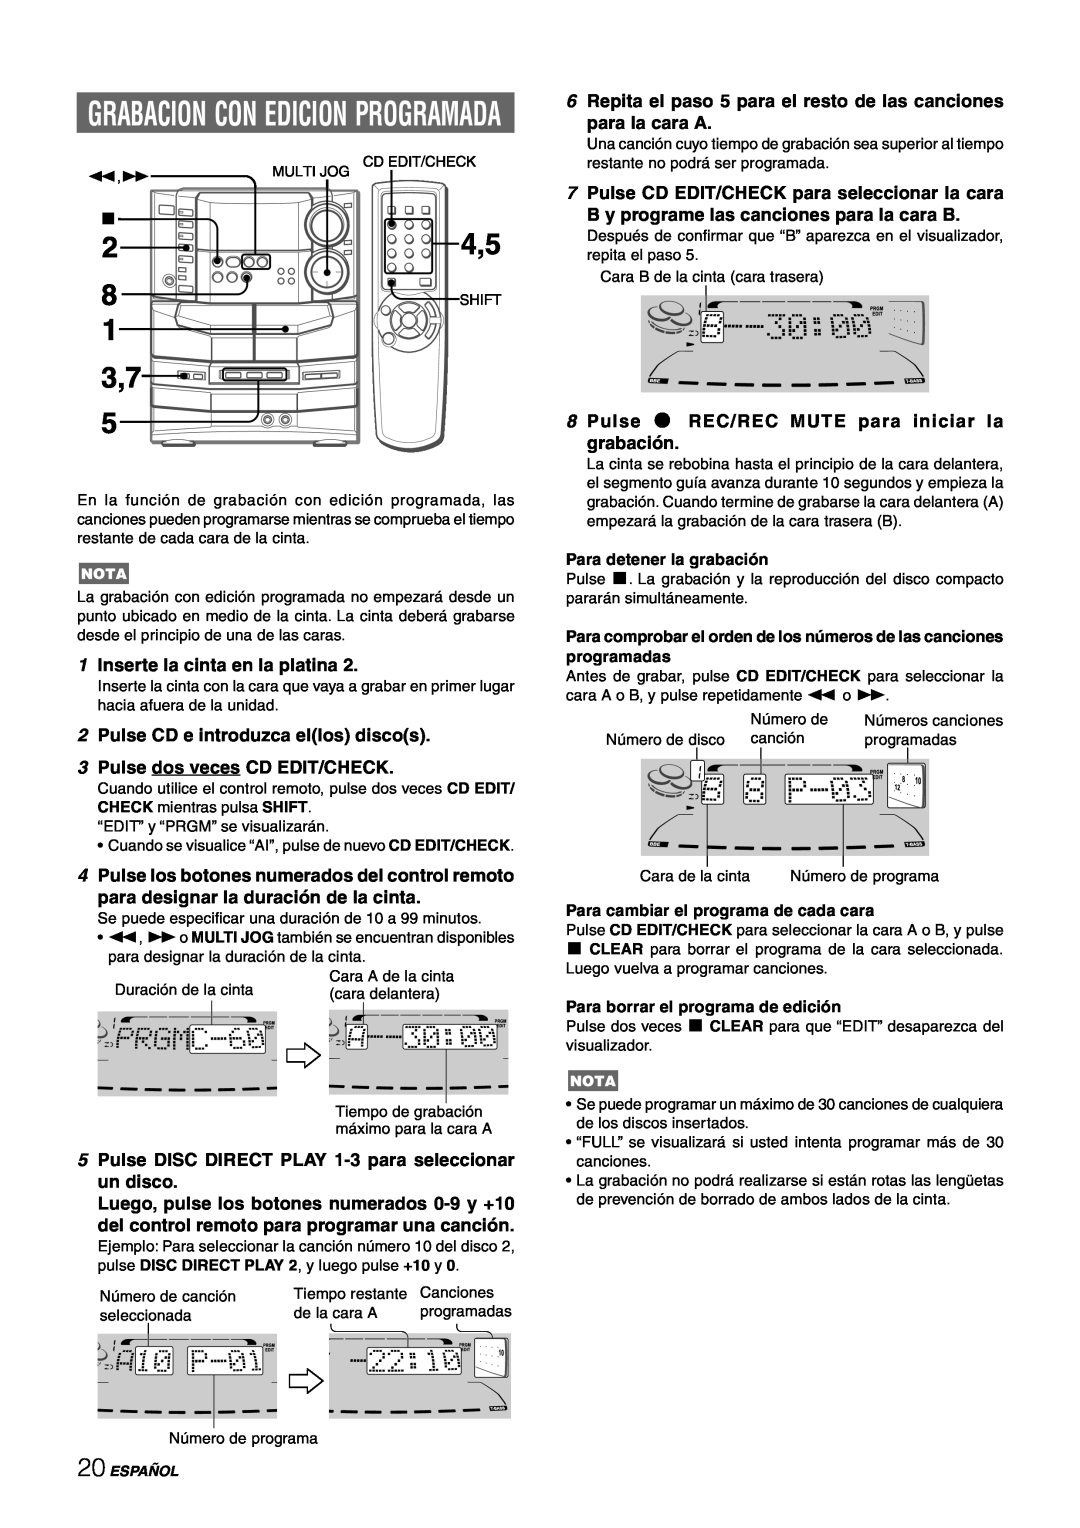 Sony NSX-AJ80 manual Grabacion Con Edicion Programada, 1Inserte la cinta en la platina, 2Pulse CD e introduzca ellos discos 